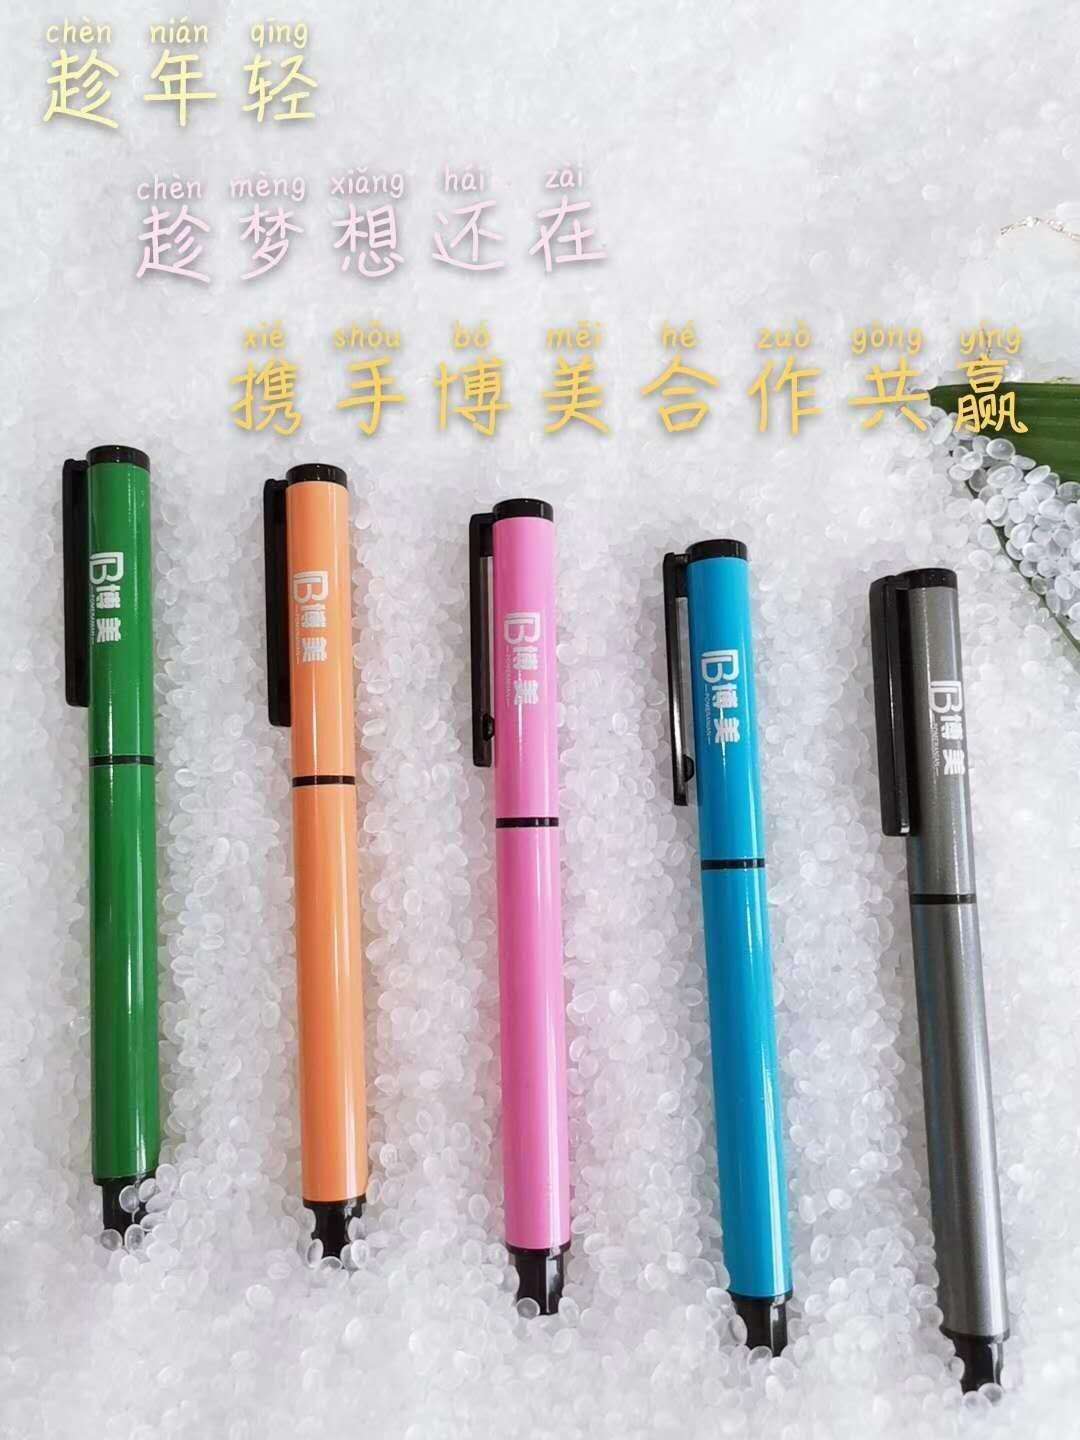 南昌博美笔业有限公司供应中性笔加工设备